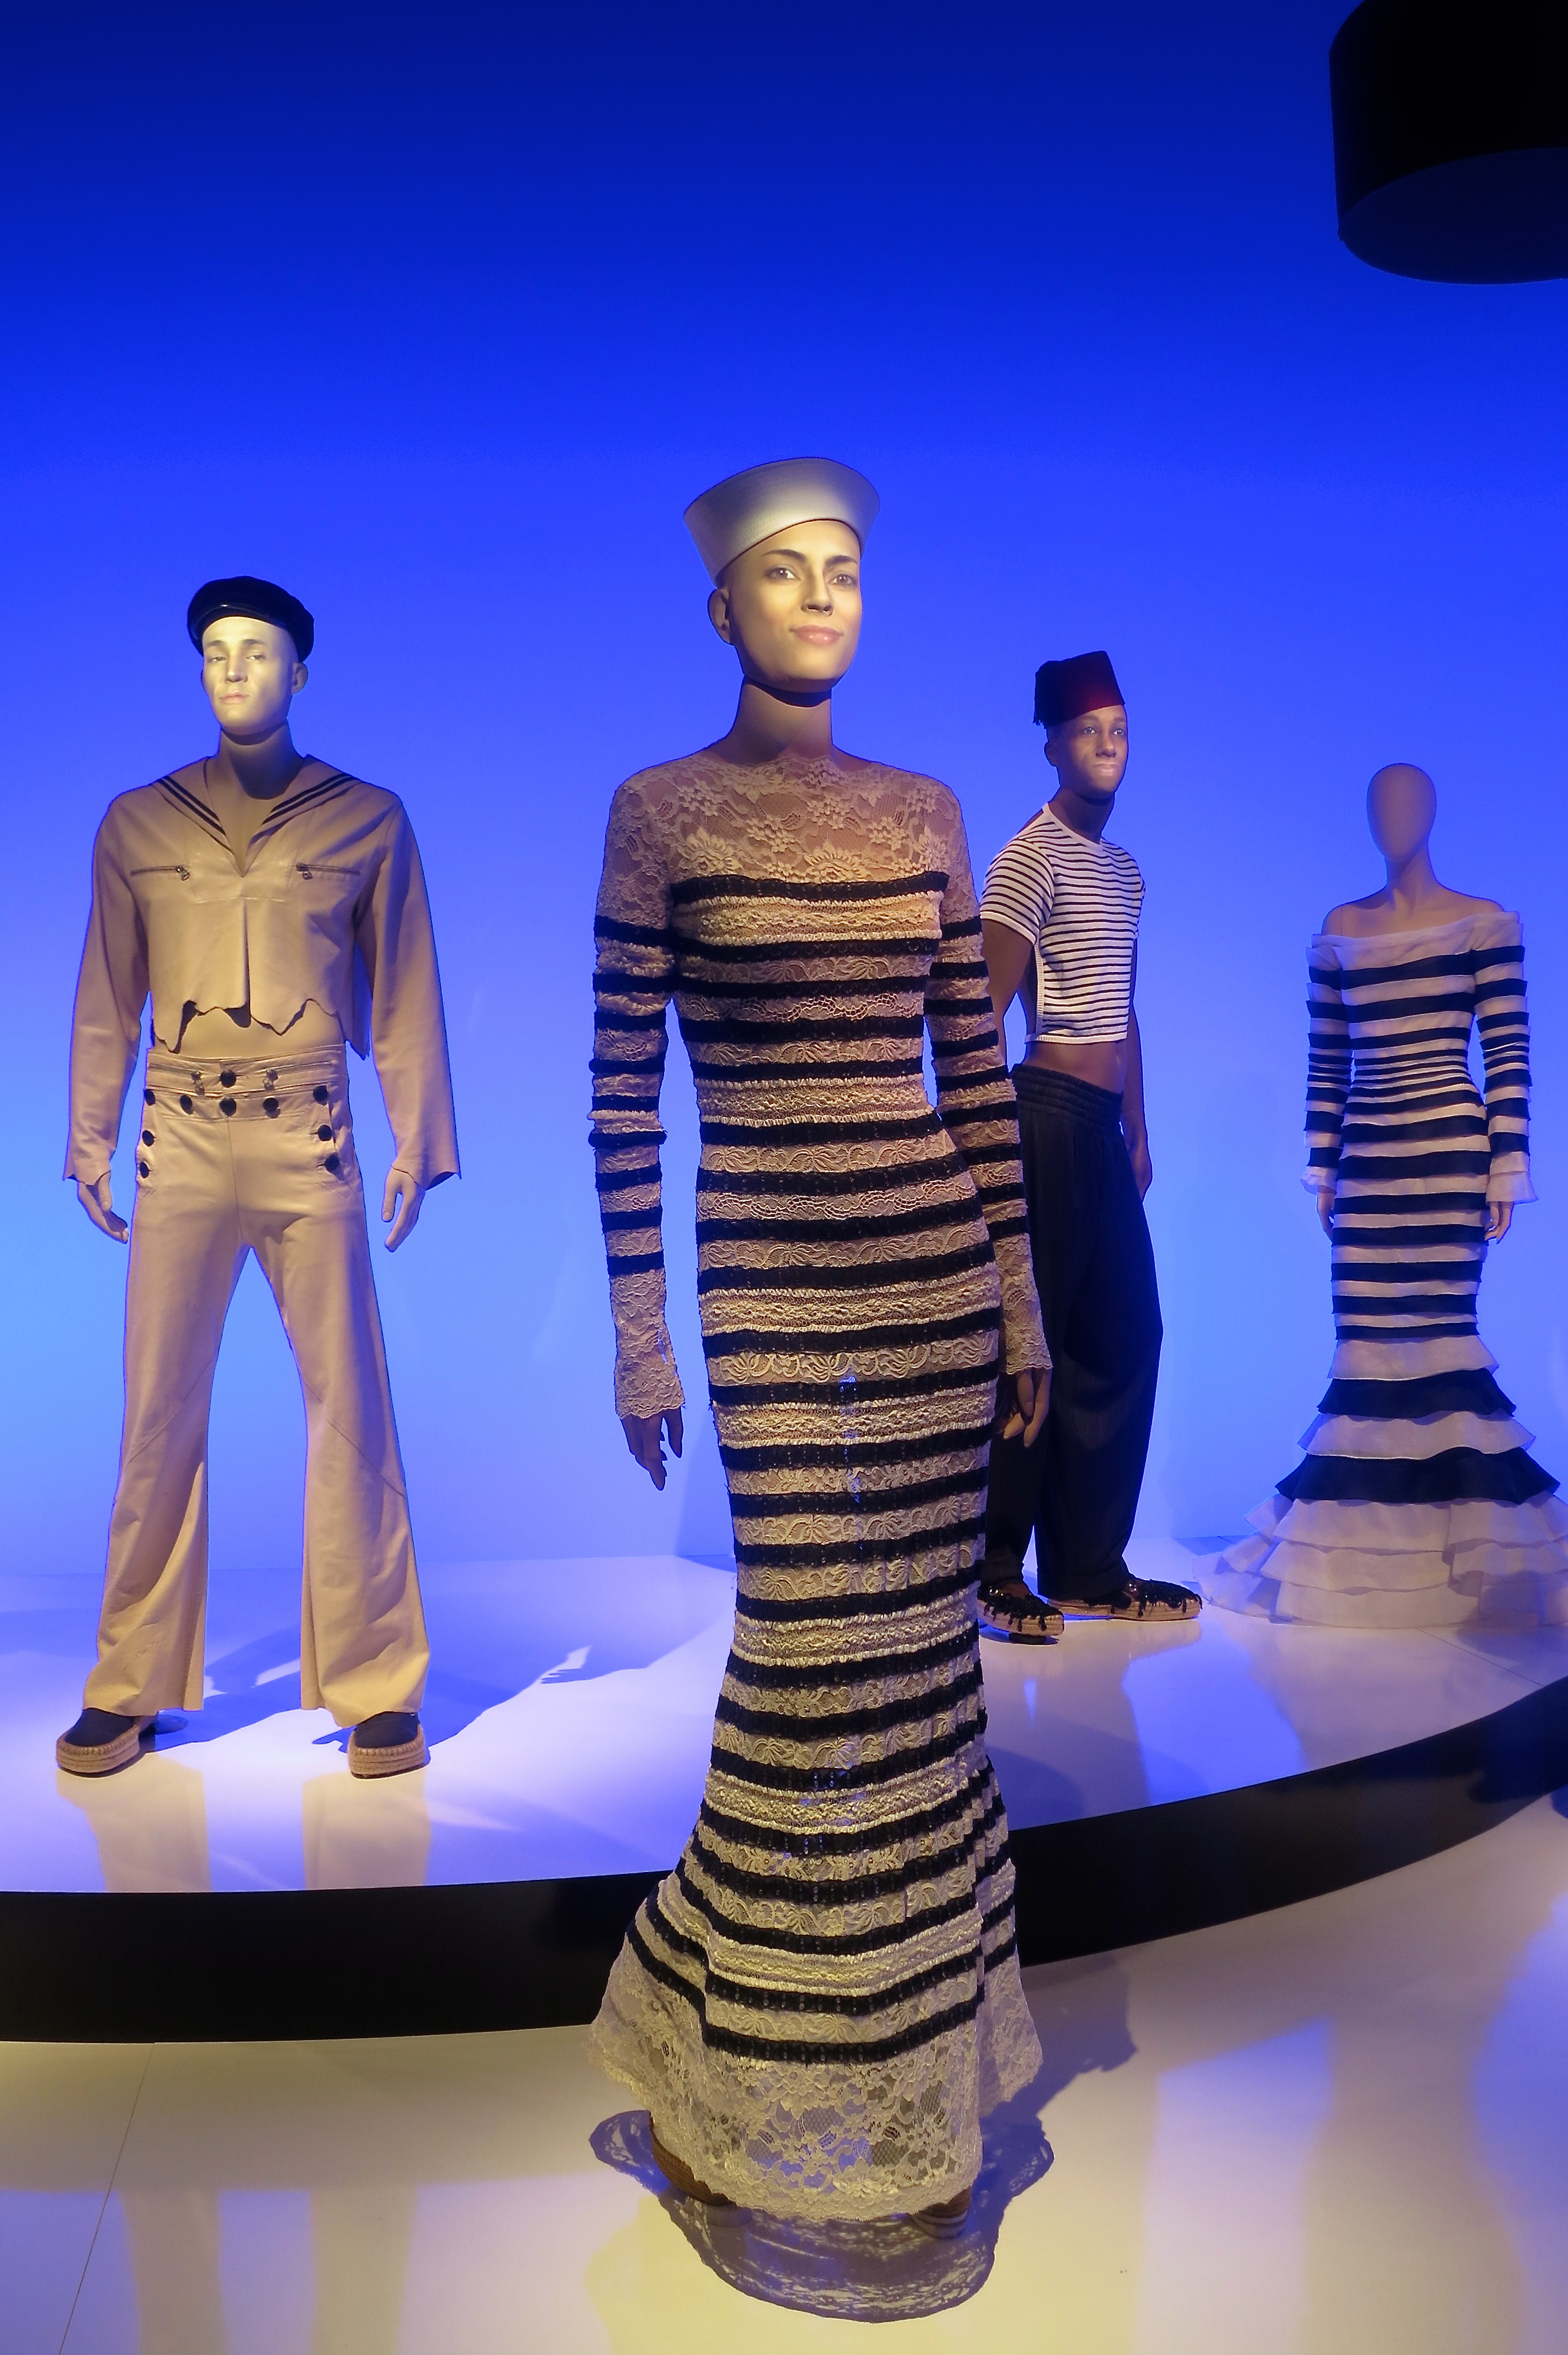 UPDATE 1-Stars flaunt Gaultier creations for designer's finale in Paris